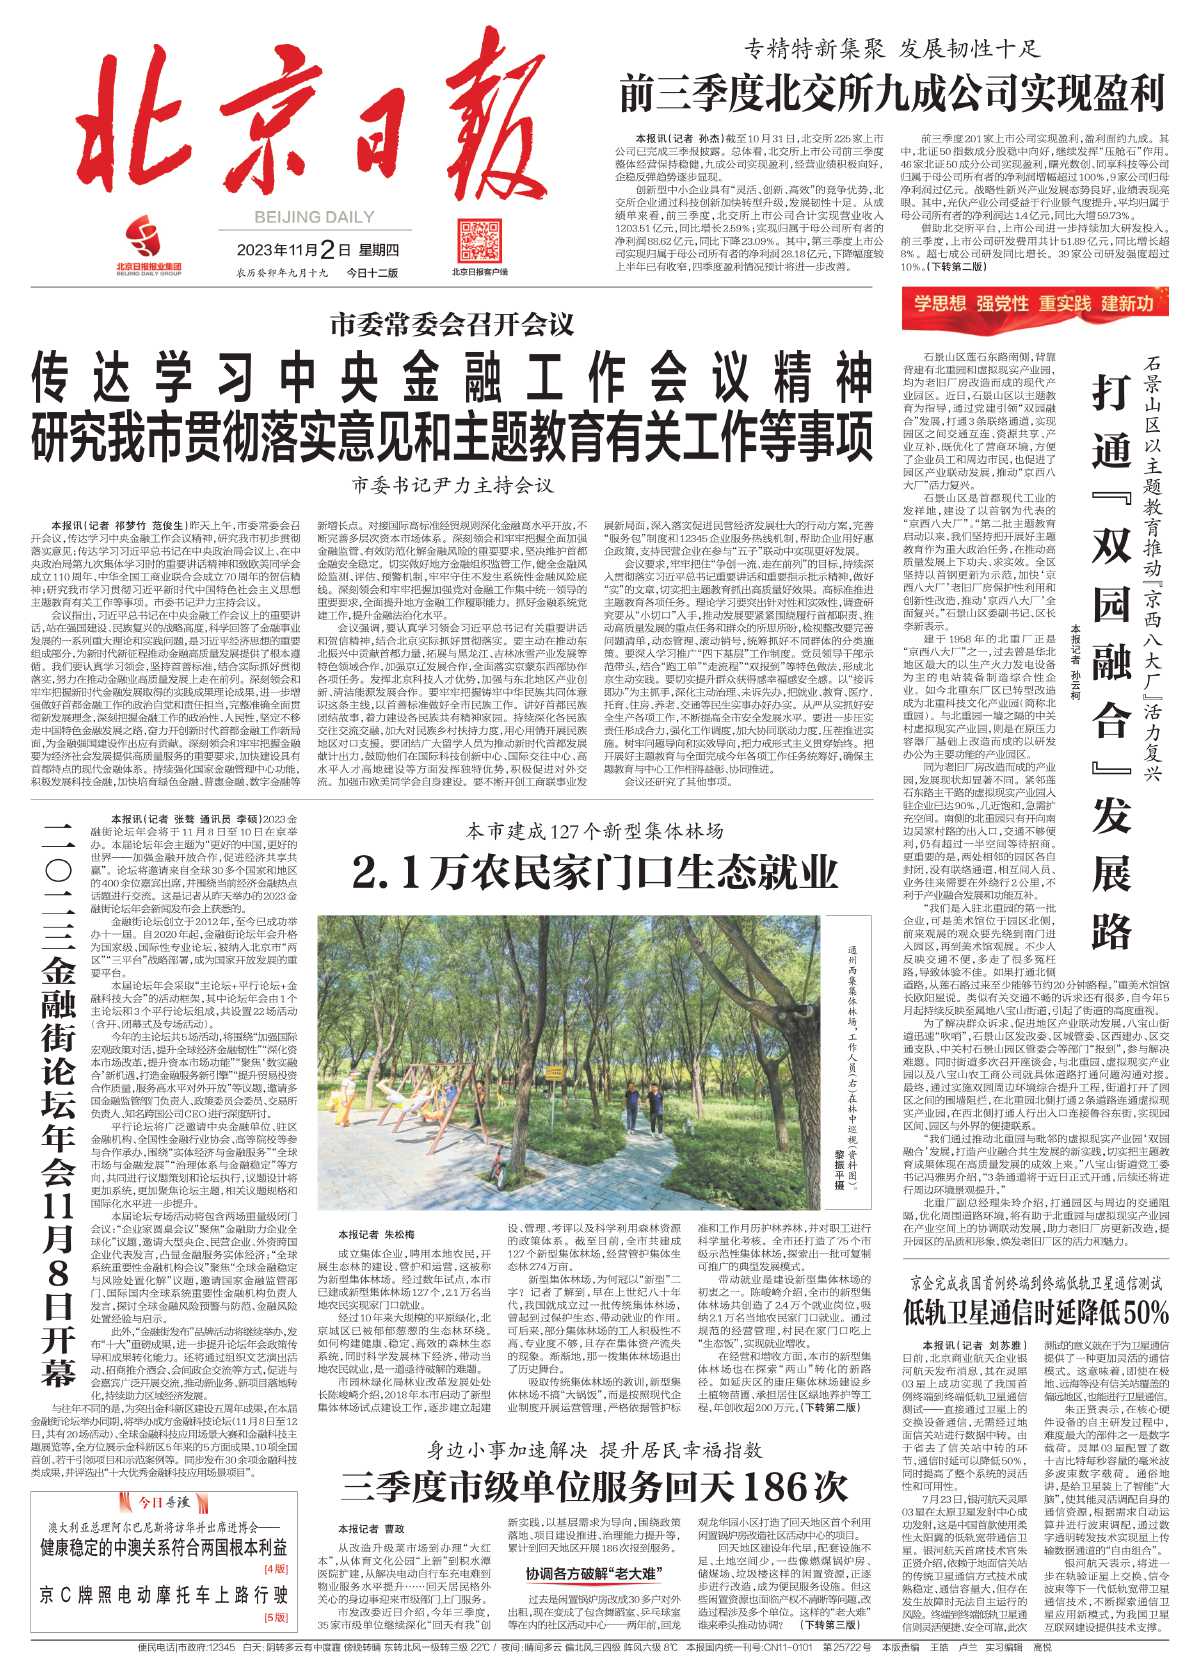 1102北京日报-本市建成127个新型集体林场%0D%0A2.1万农民家门口生态就业.jpg